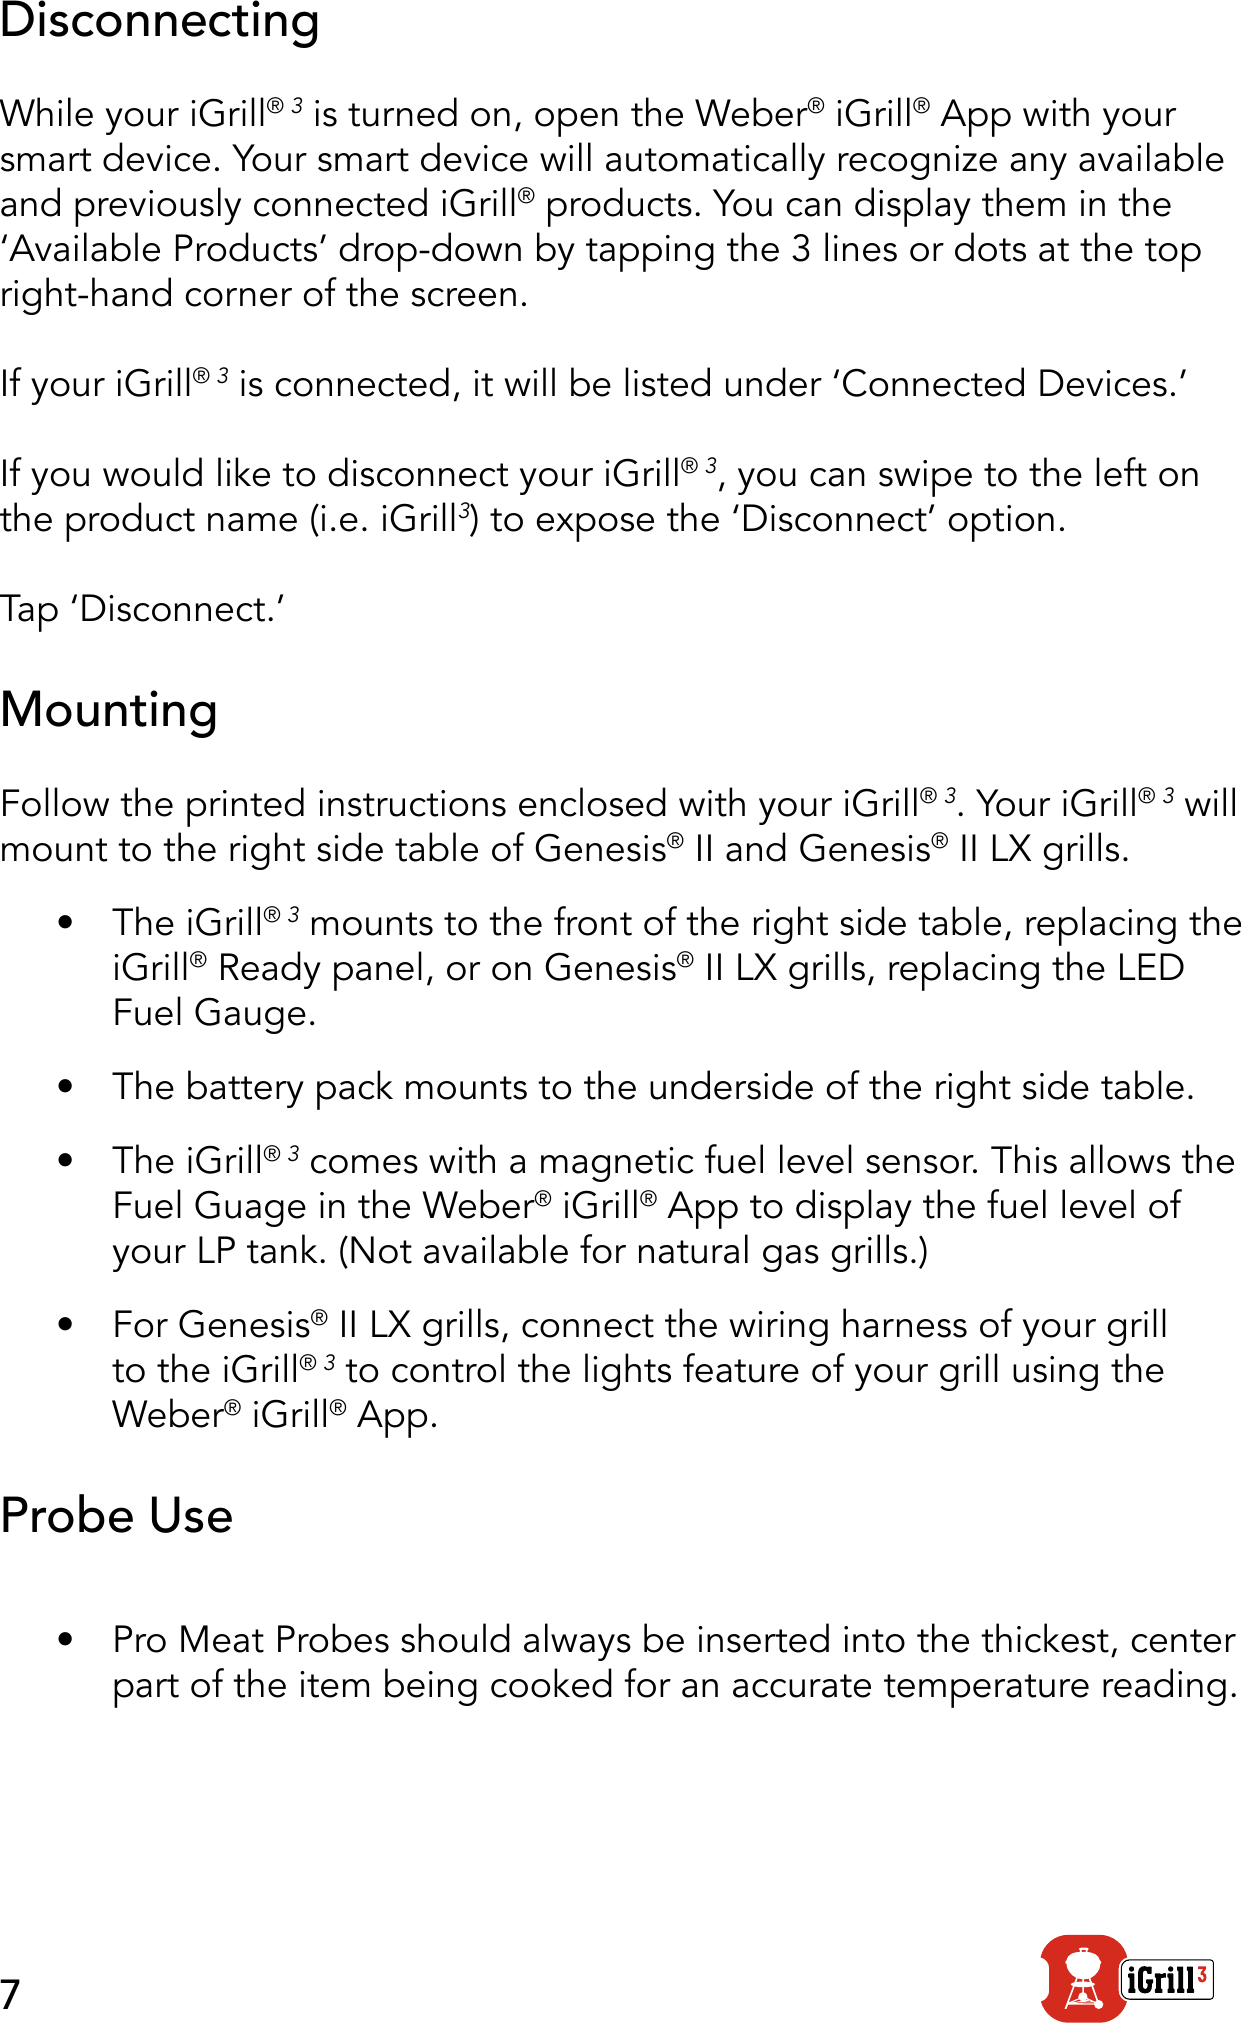 weber igrill app instructions